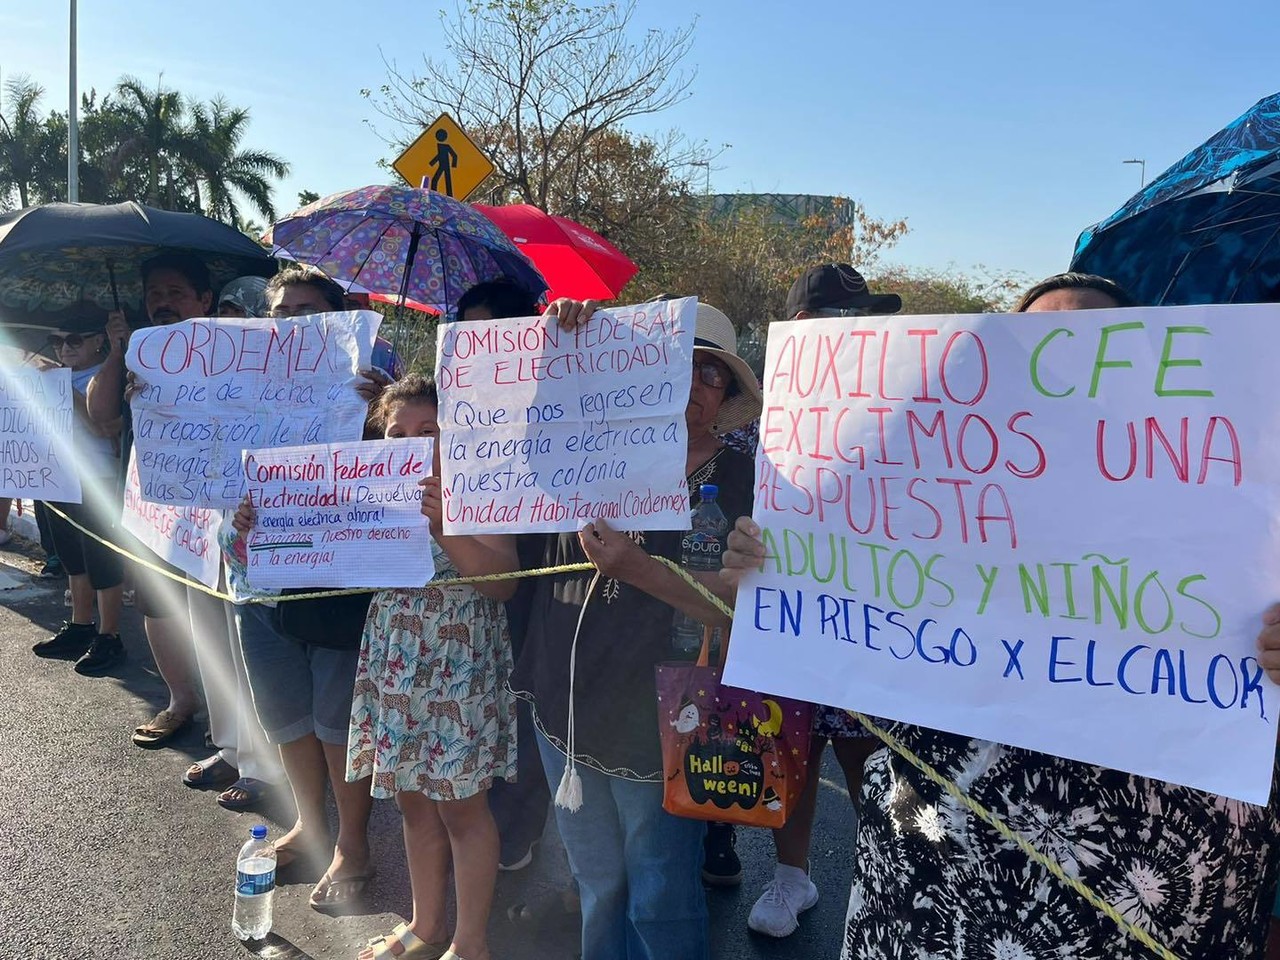 Manifestación de vecinos, por falta de energía eléctrica en la colonia de Cordemex. Foto: Redes sociales